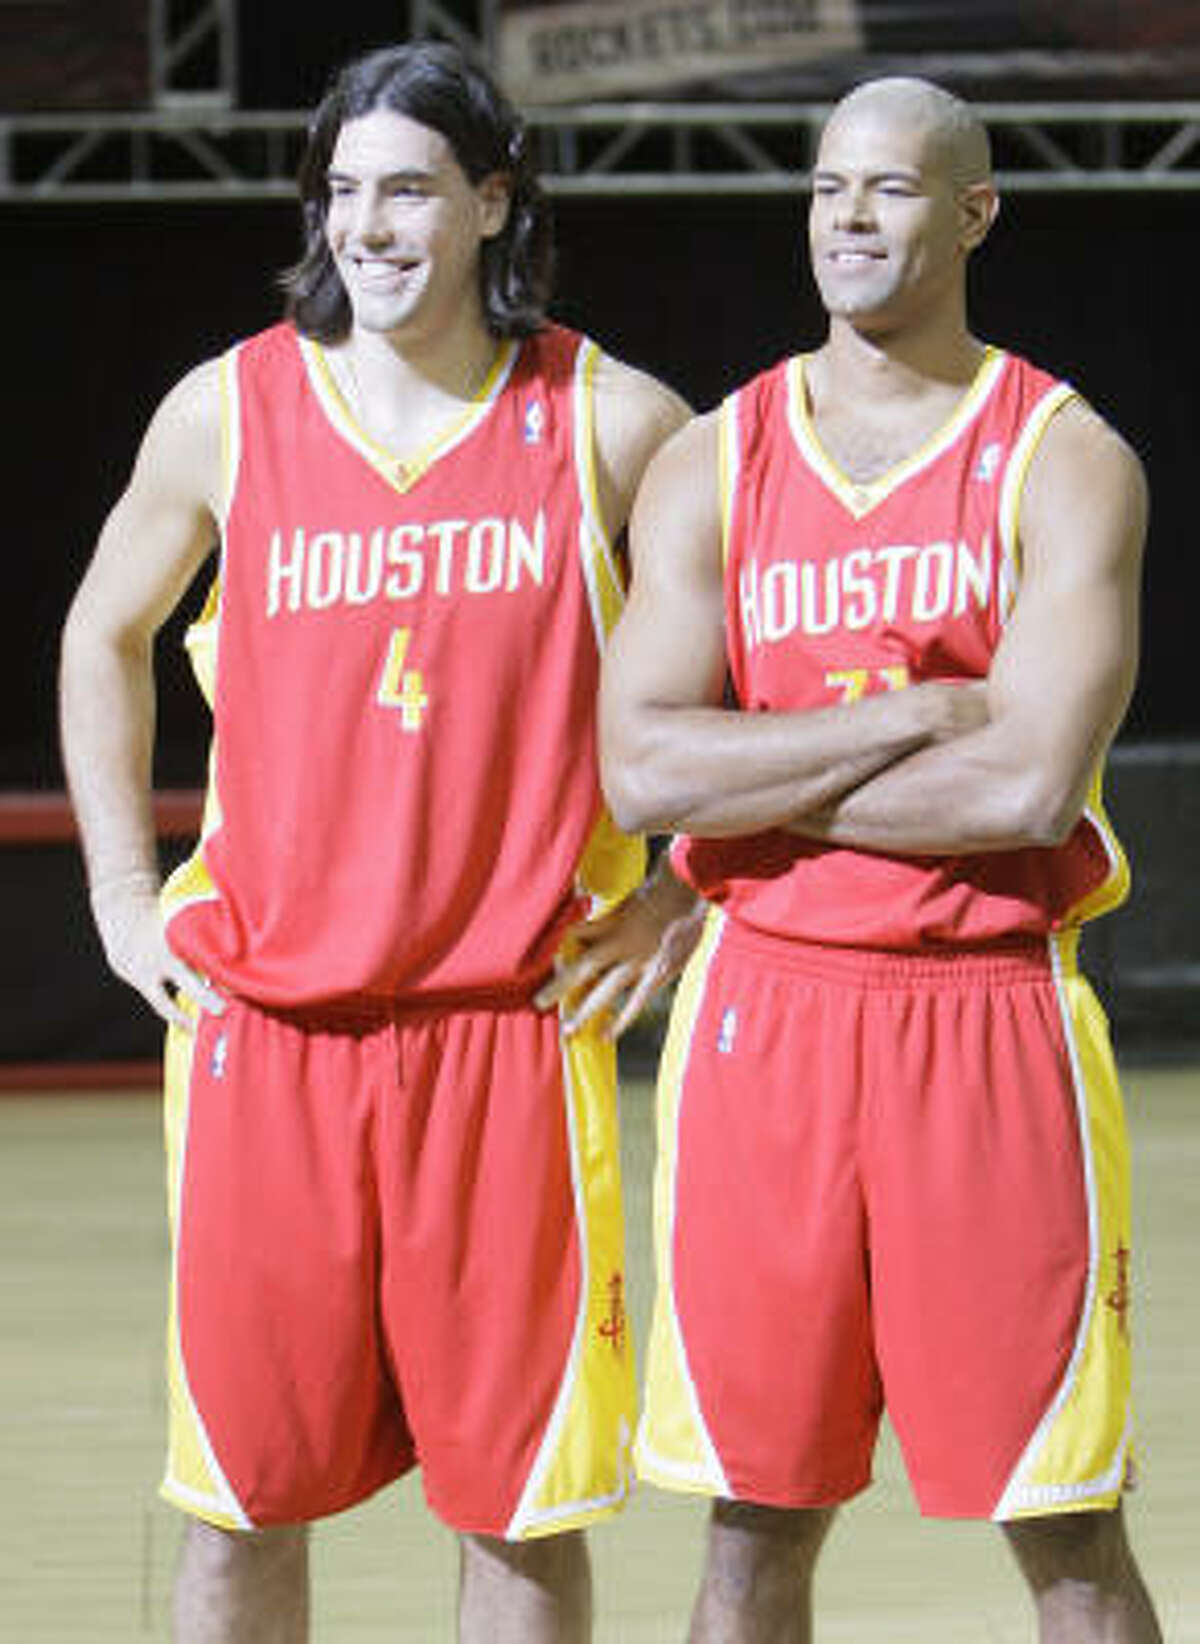 Rockets' franchise uniforms